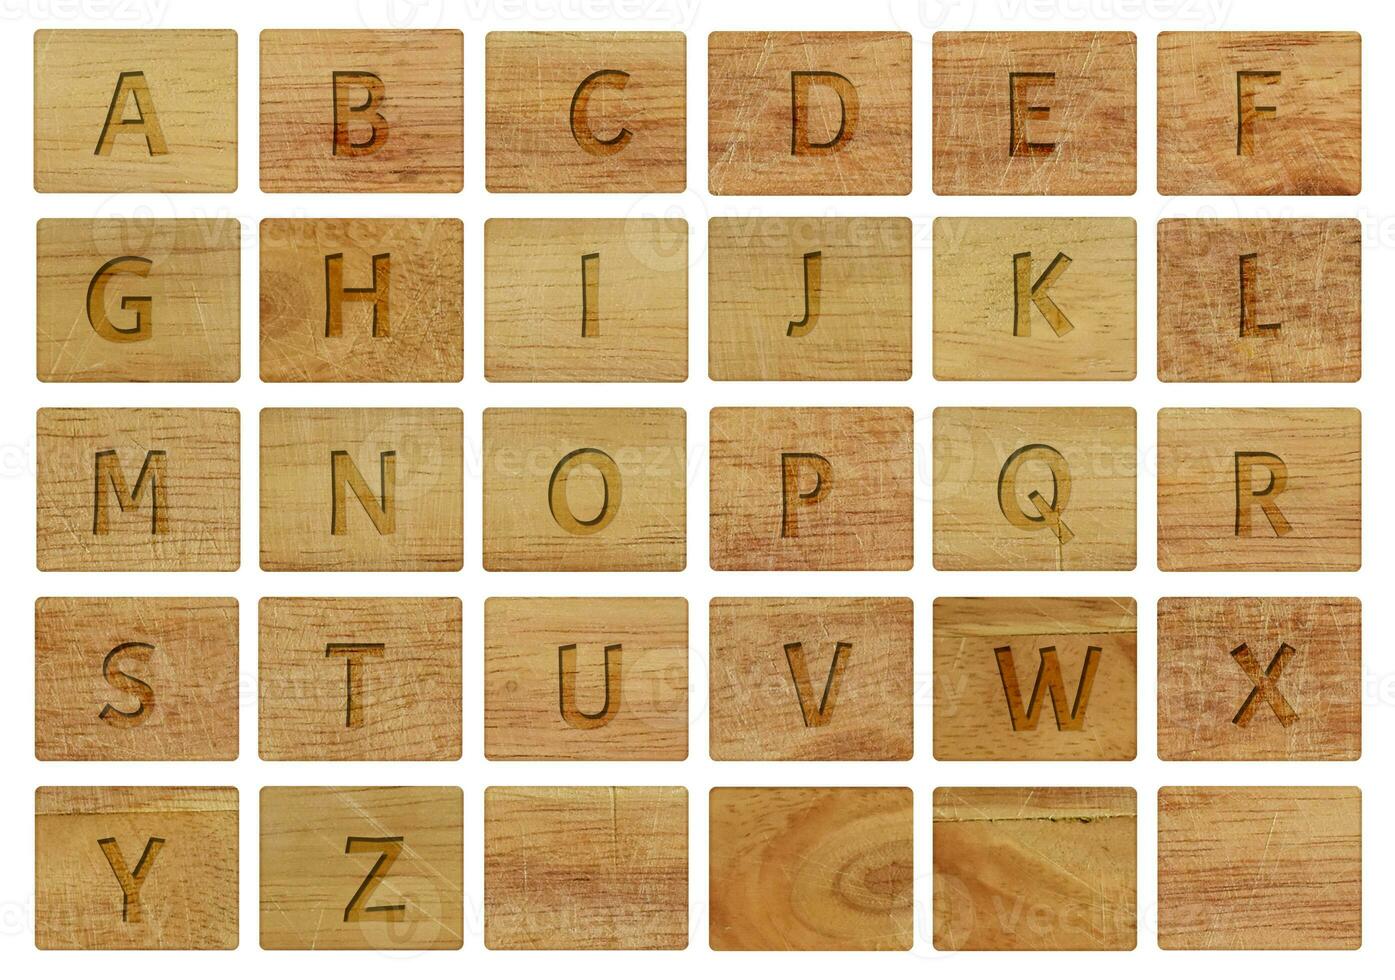 letras do alfabeto em peças de madeira, isoladas em um fundo branco. foto